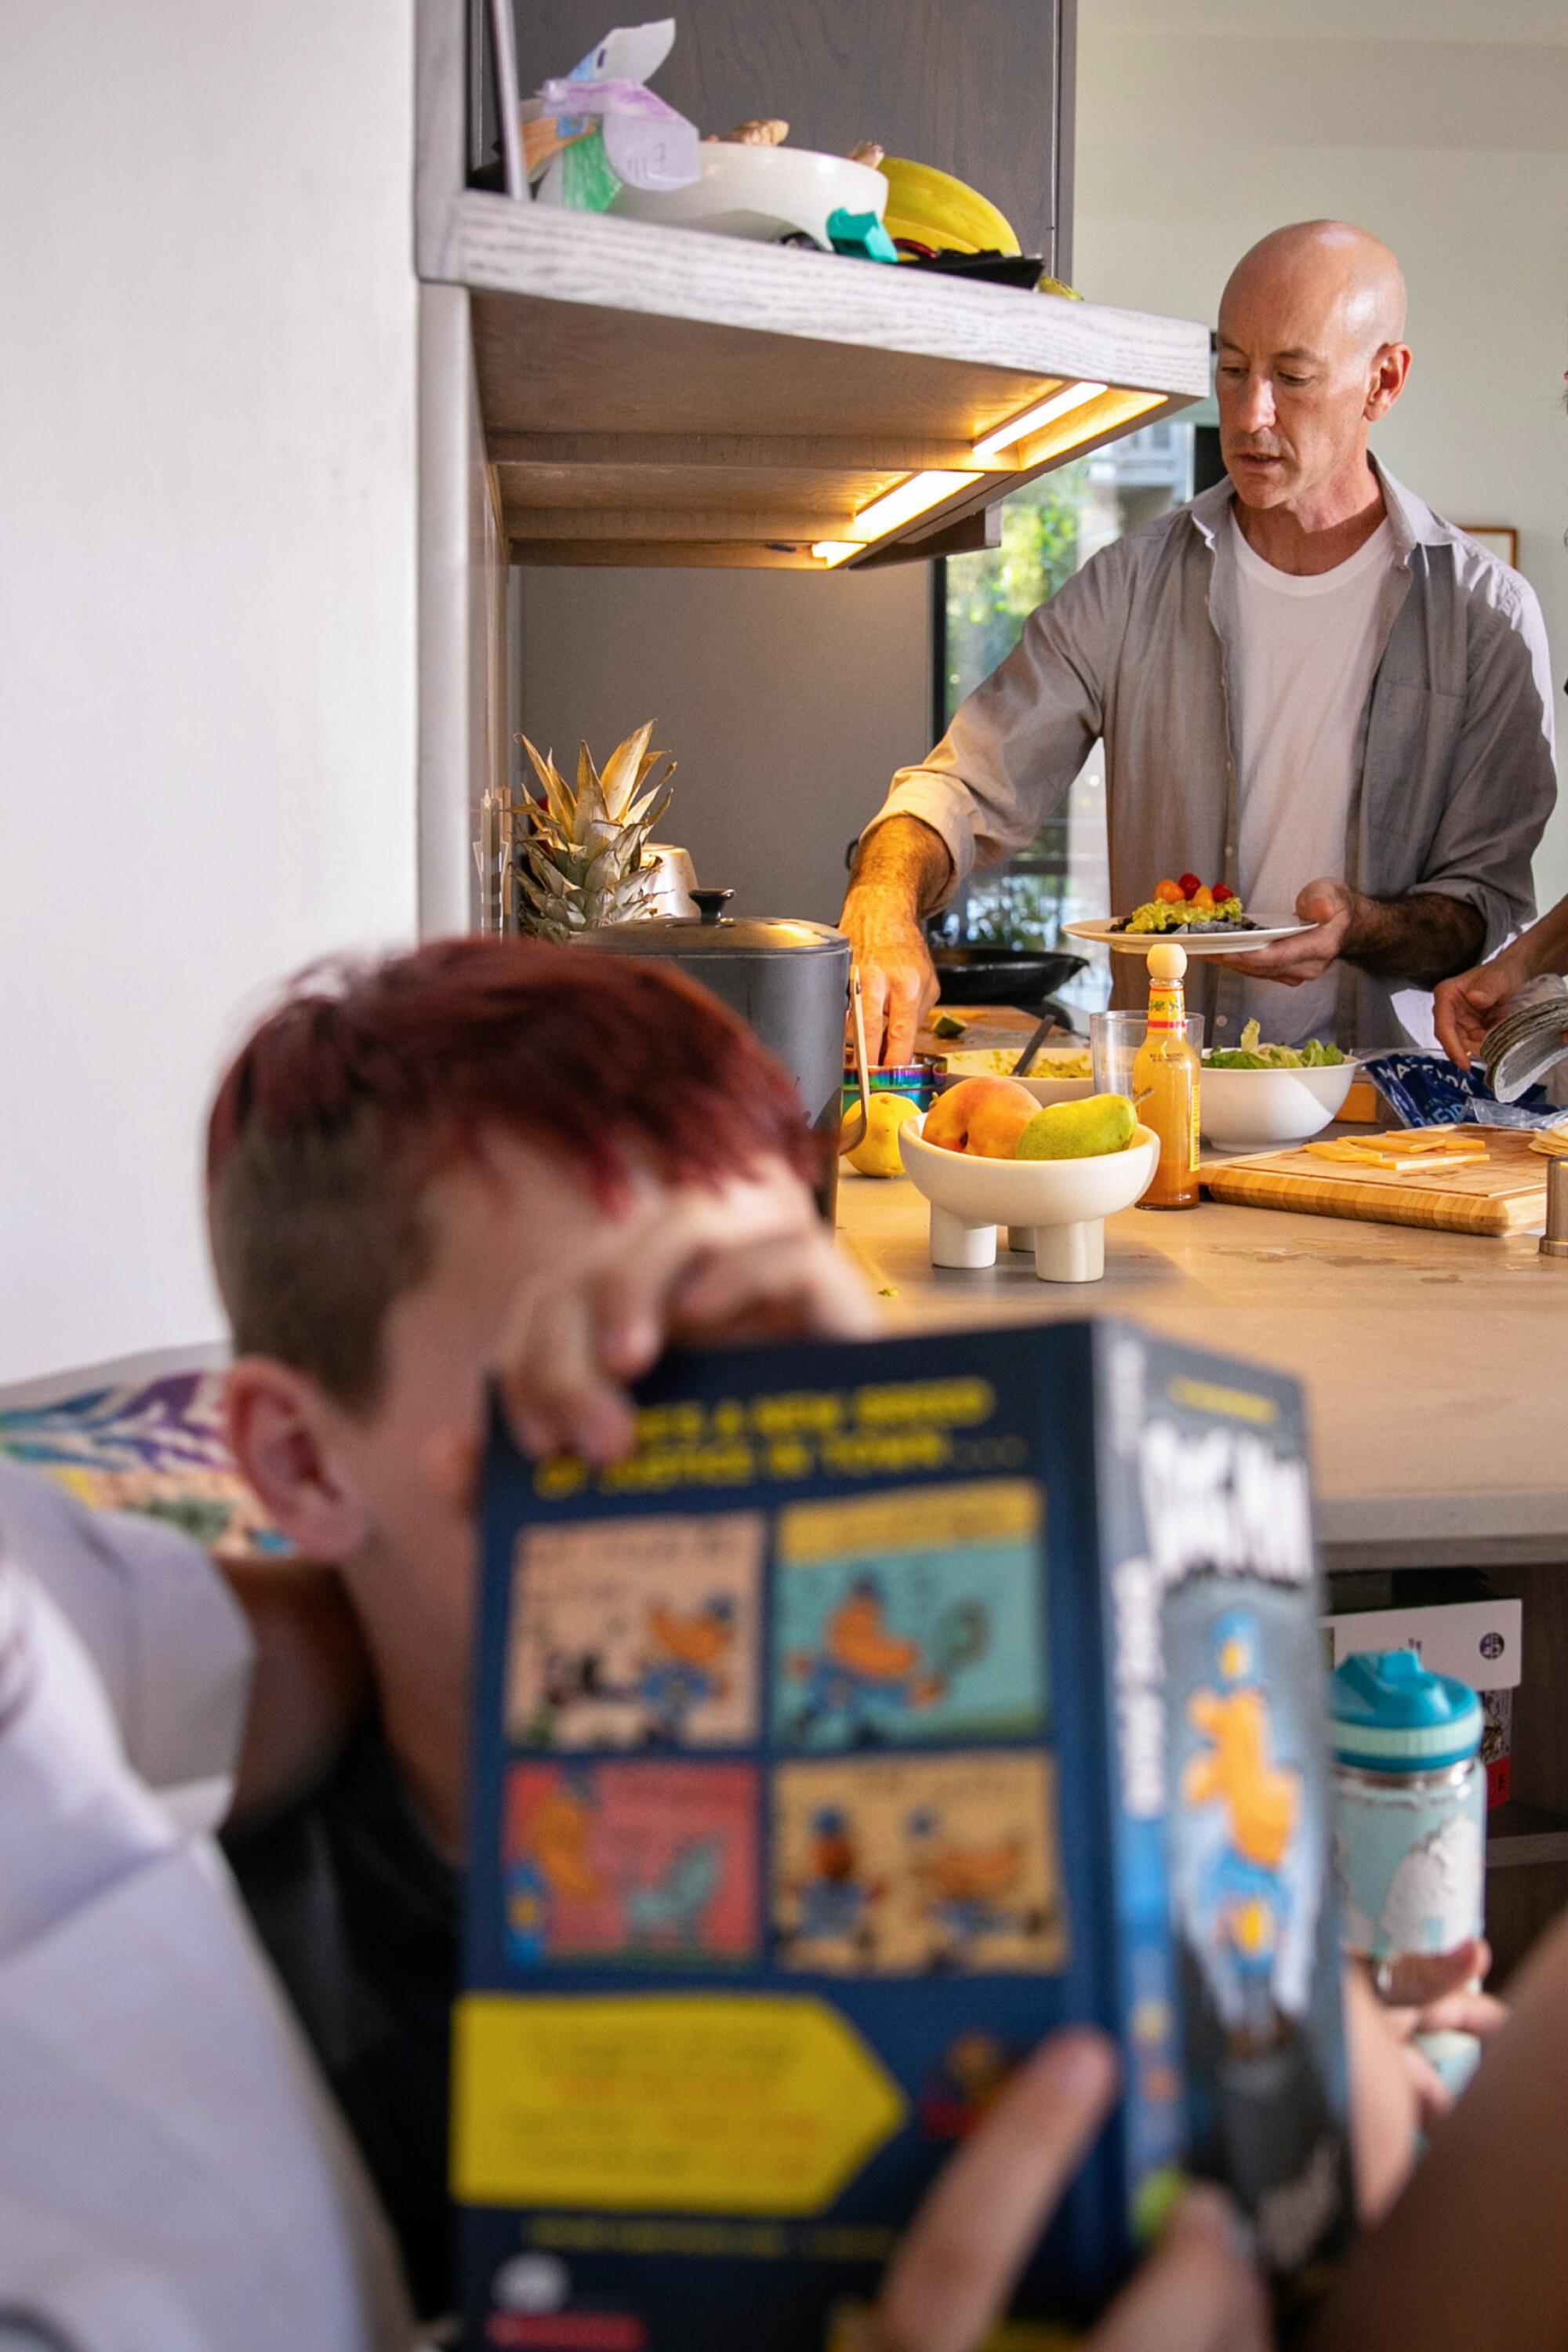 Een man maakt het eten klaar in de keuken terwijl een kind in een nabijgelegen hoekje leest.